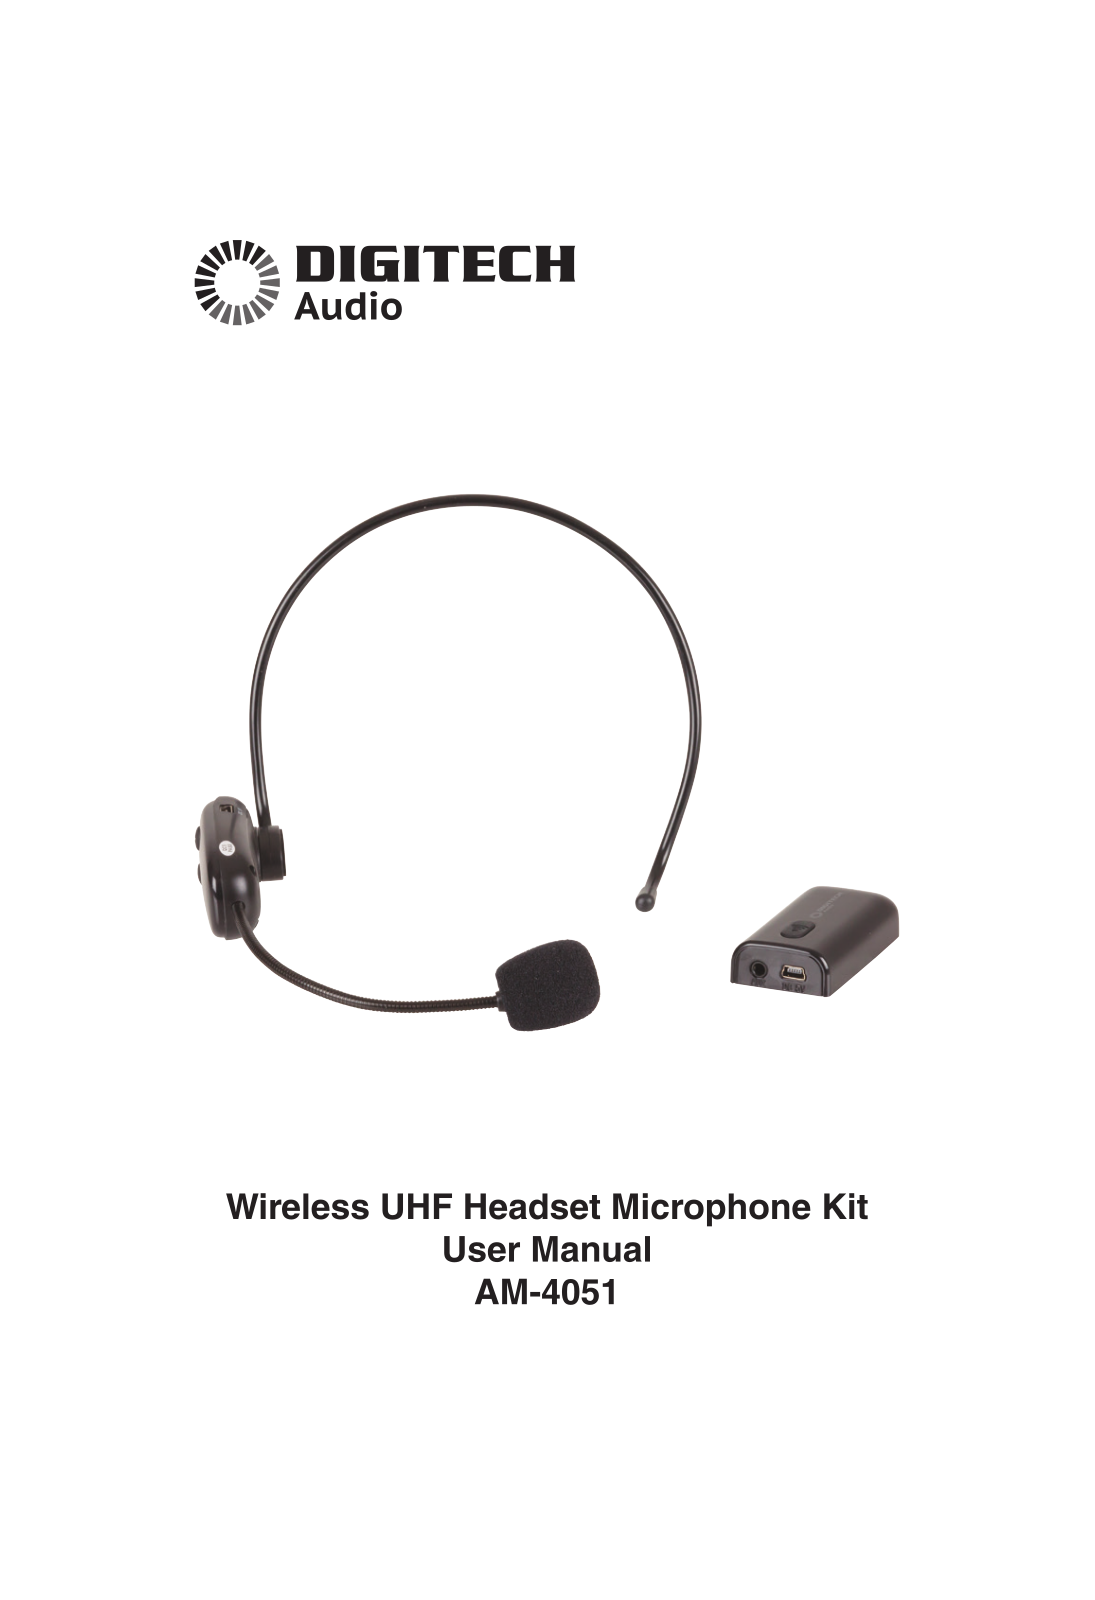 Digitech AM-4051 User Manual